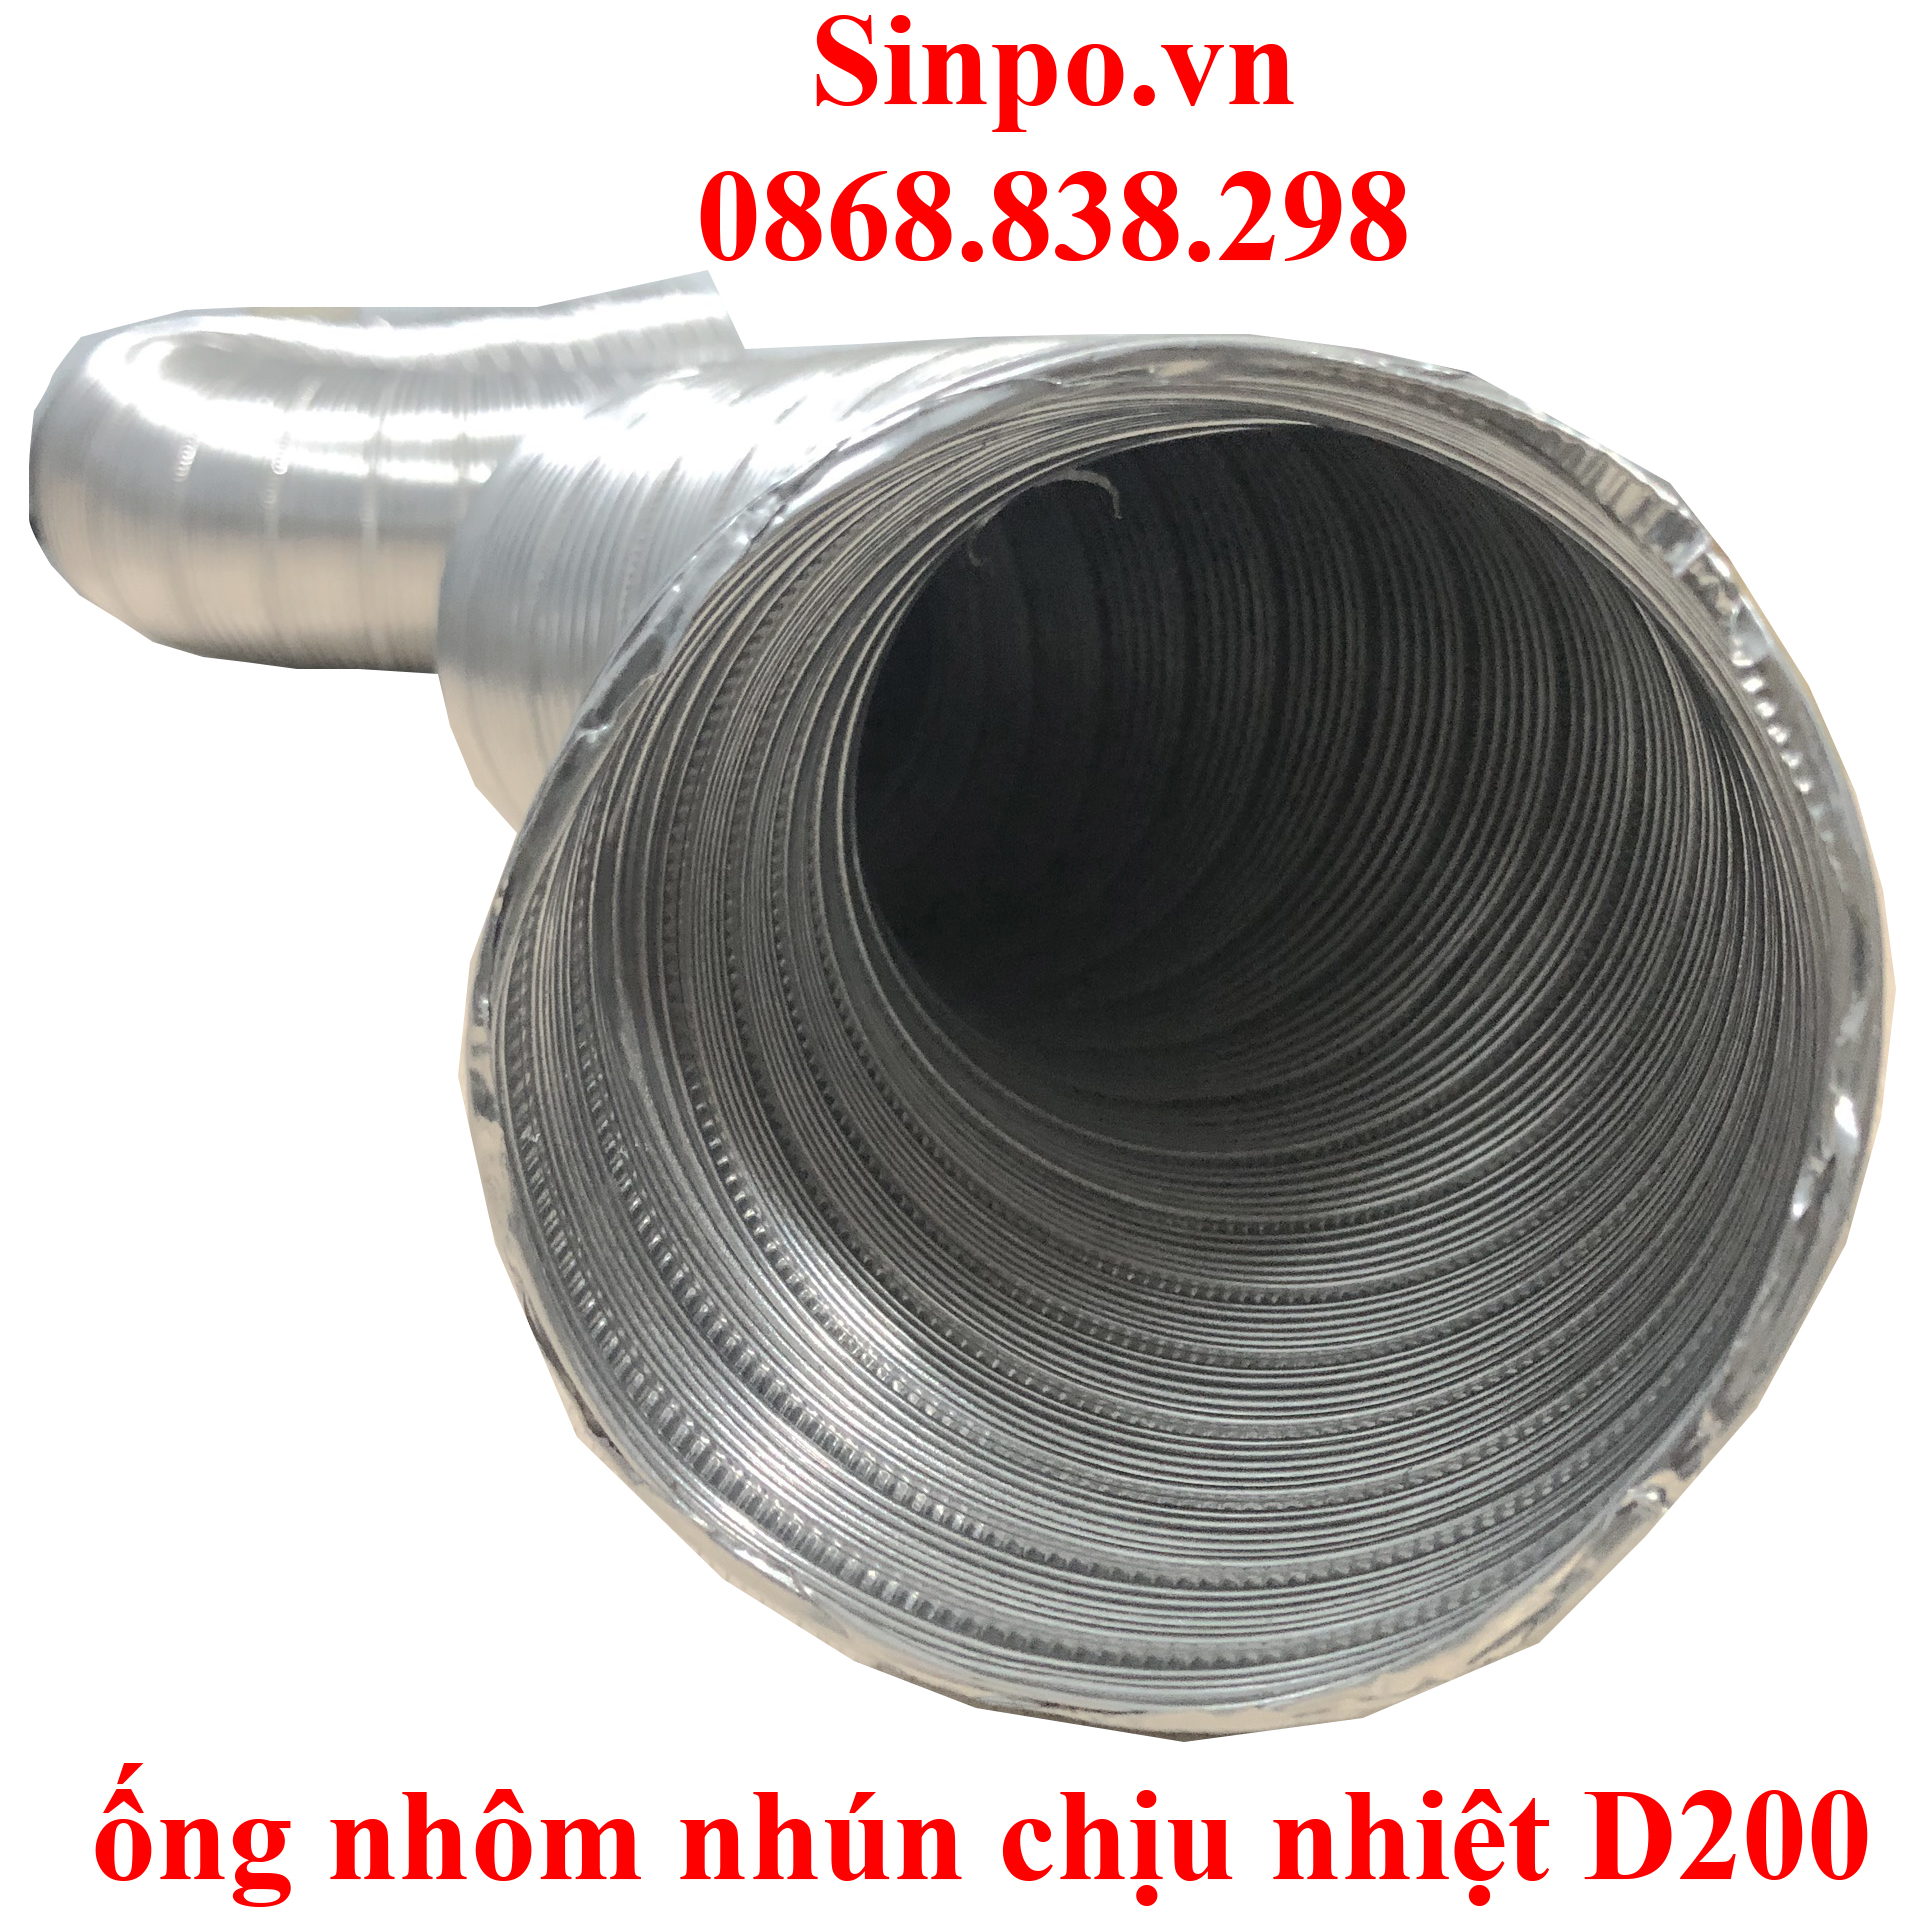 Giá bán ống nhôm nhún chịu nhiệt D200 mm tại Hà Nội